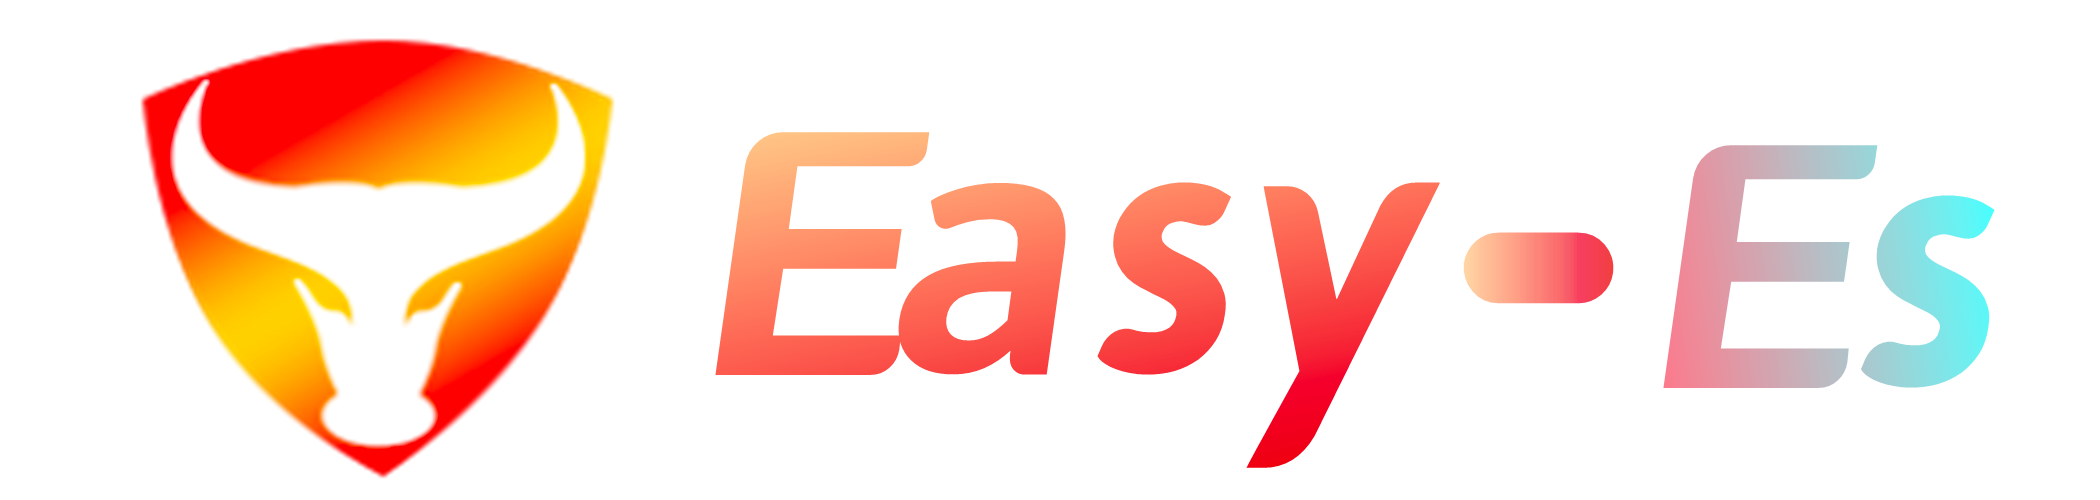 easy-es